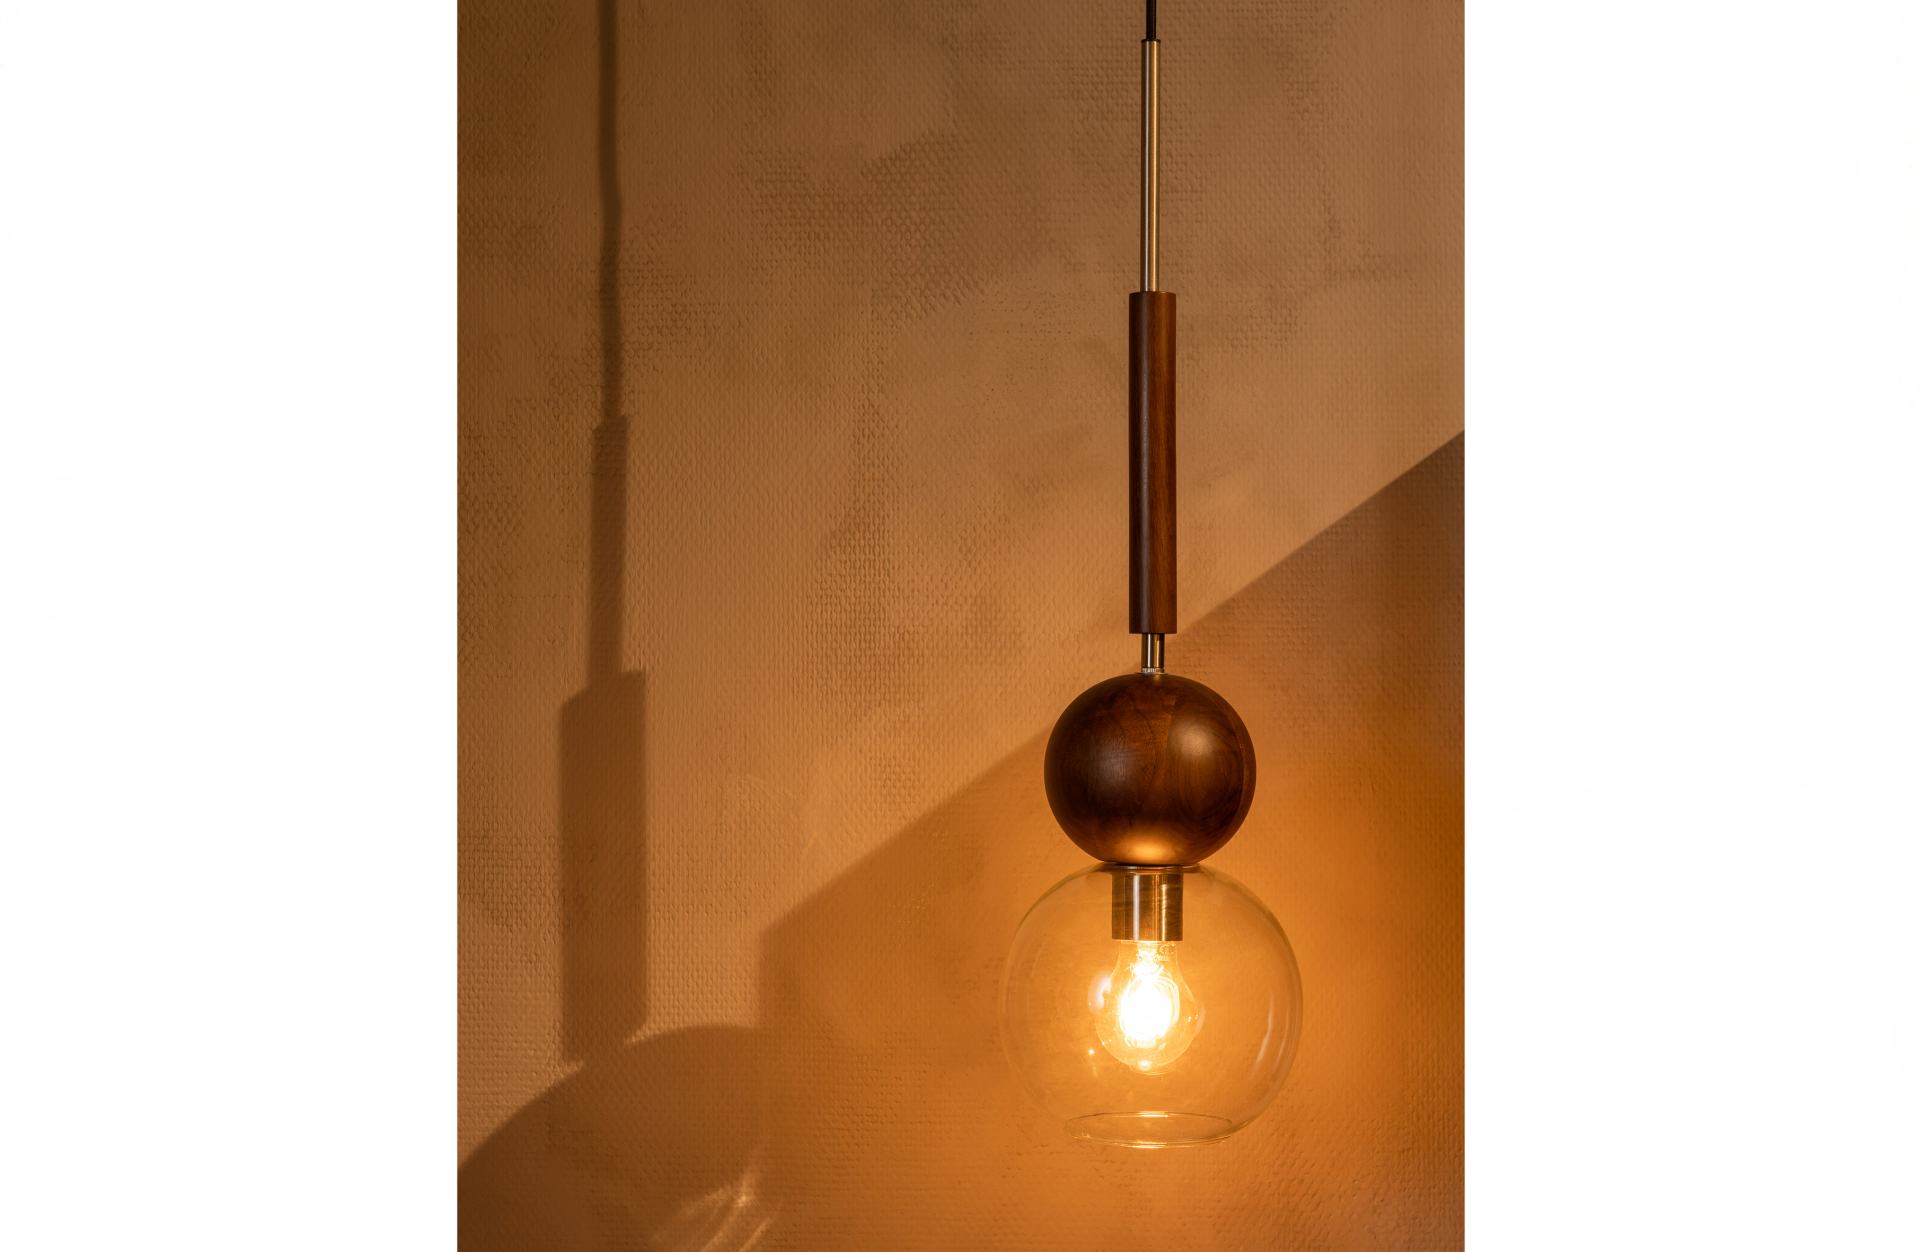 Die Hängeleuchte Babble überzeugt mit seinem modernen Design. Gefertigt wurde er aus Walnussholz, welches einen braunen Farbton besitzt. Die Lampe verfügt über eine Lichtquelle.